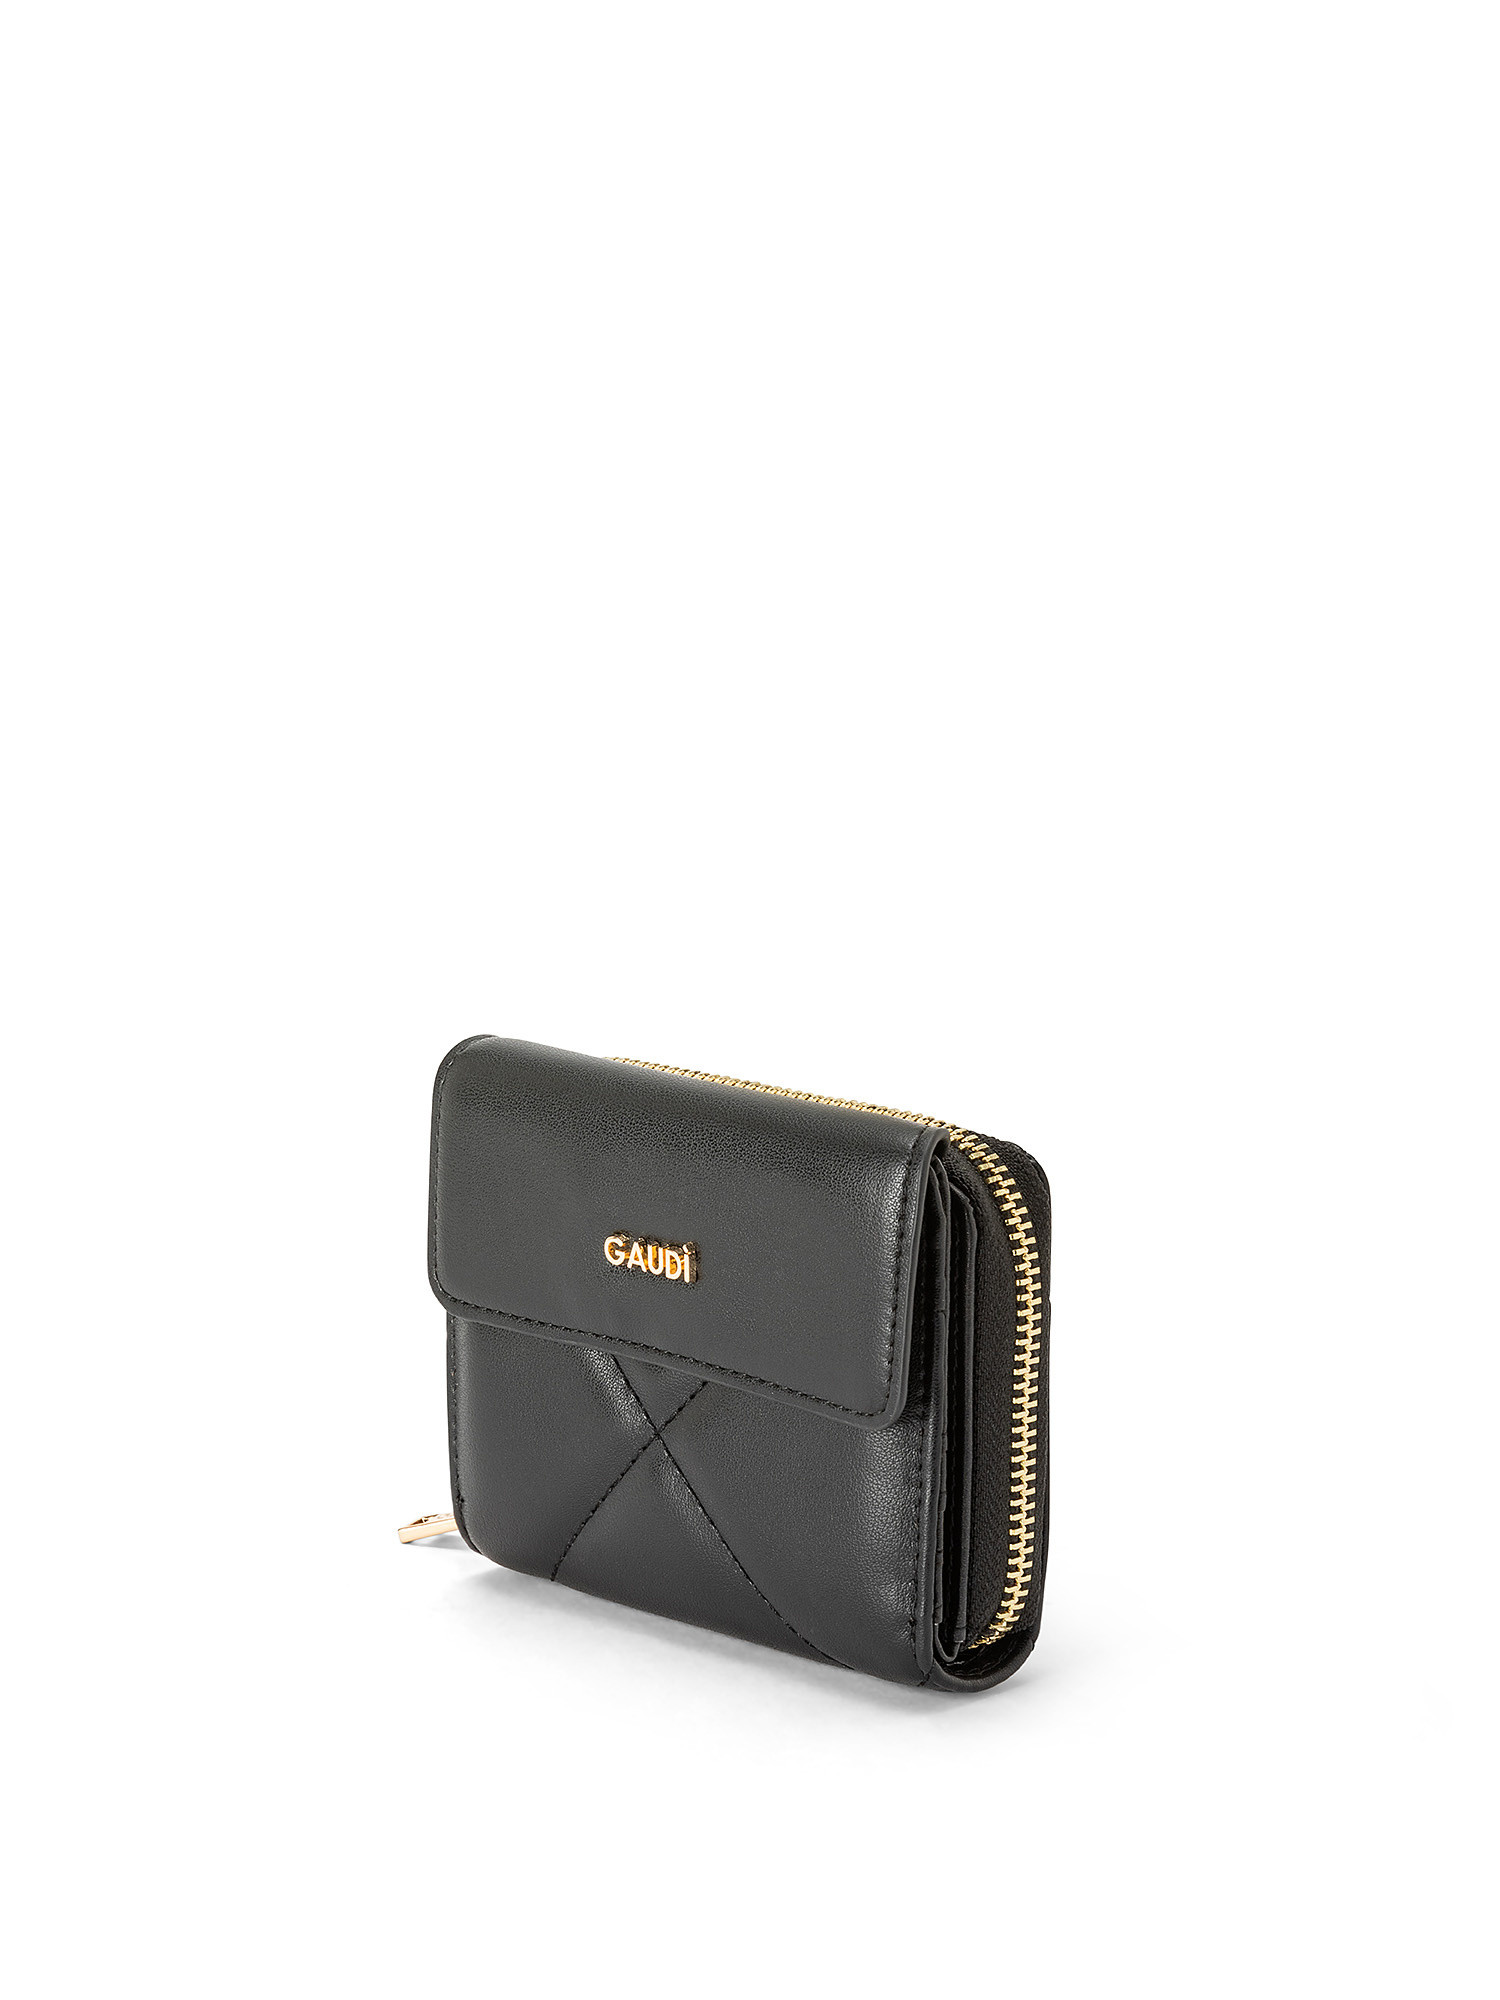 Gaudì - Luna small wallet, Black, large image number 1